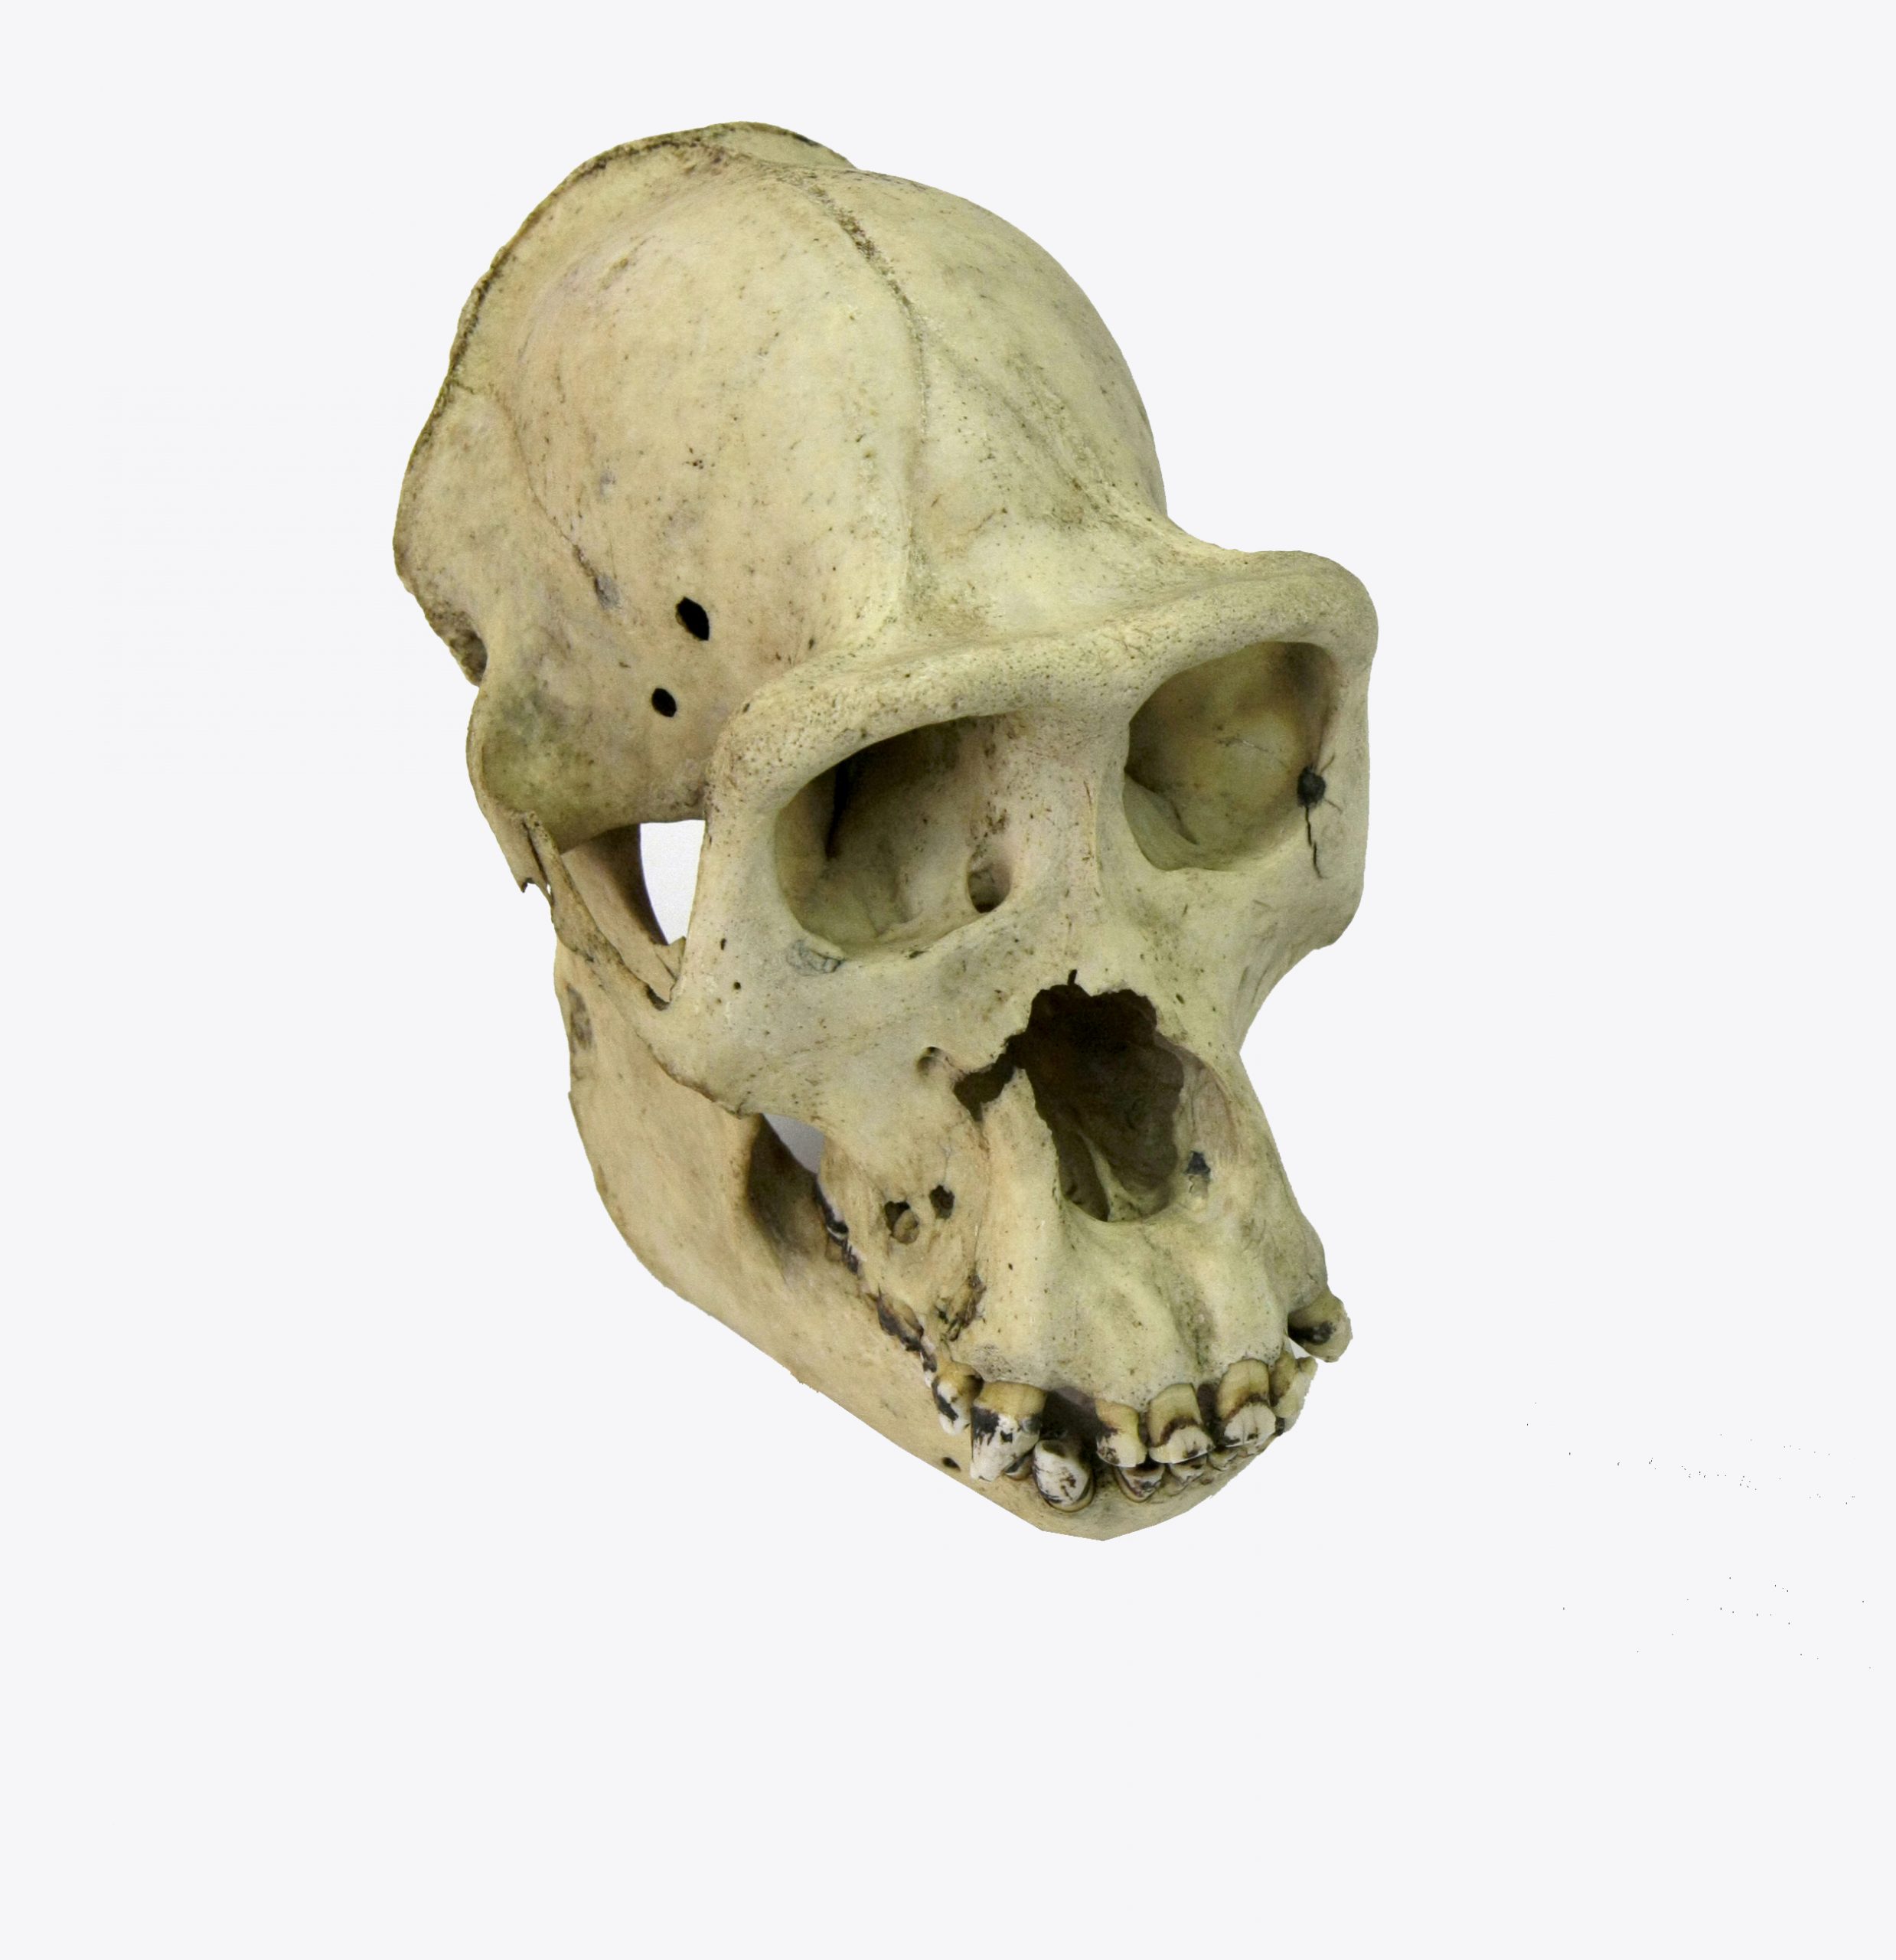 Crani de goril·la femella